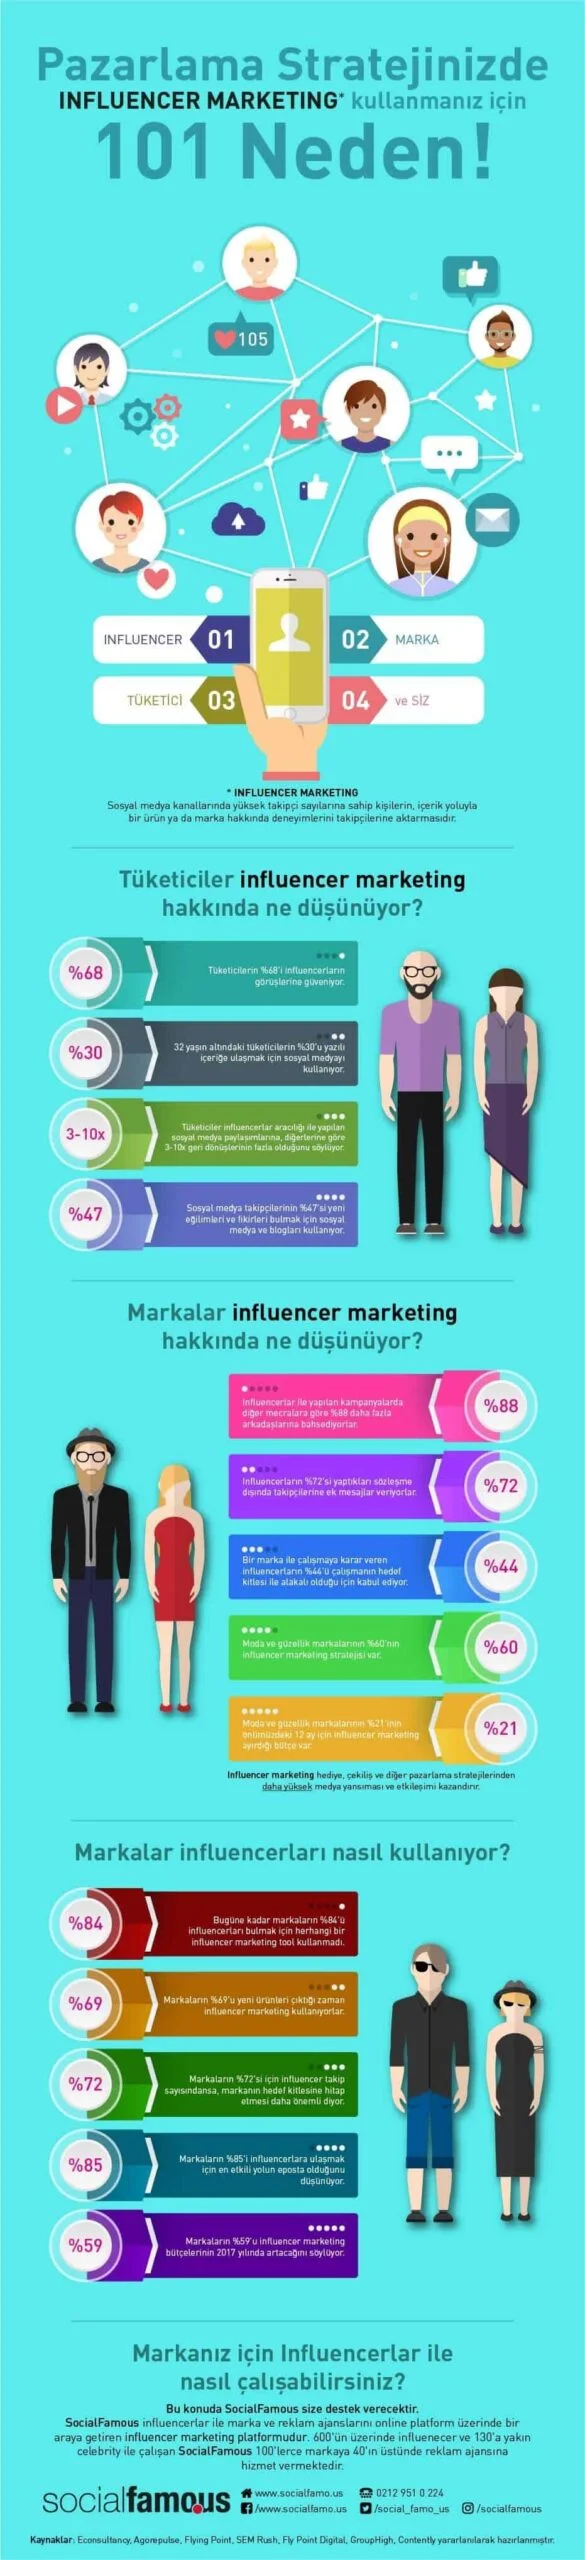 influencer marketing nedir? 101 neden!